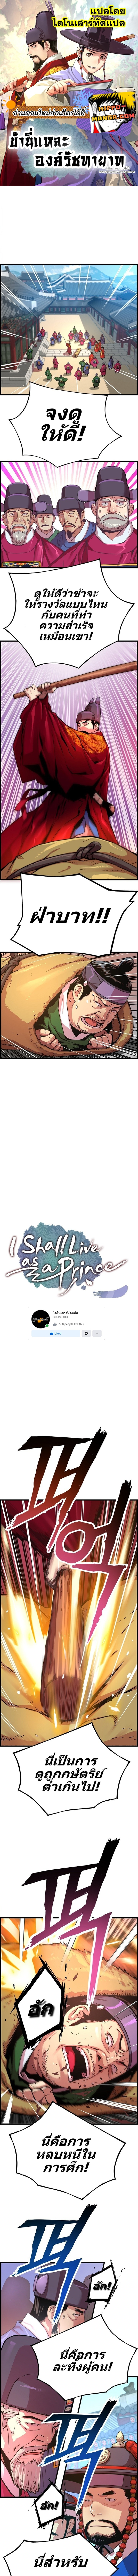 I Shall Live As a Prince 45 (1)